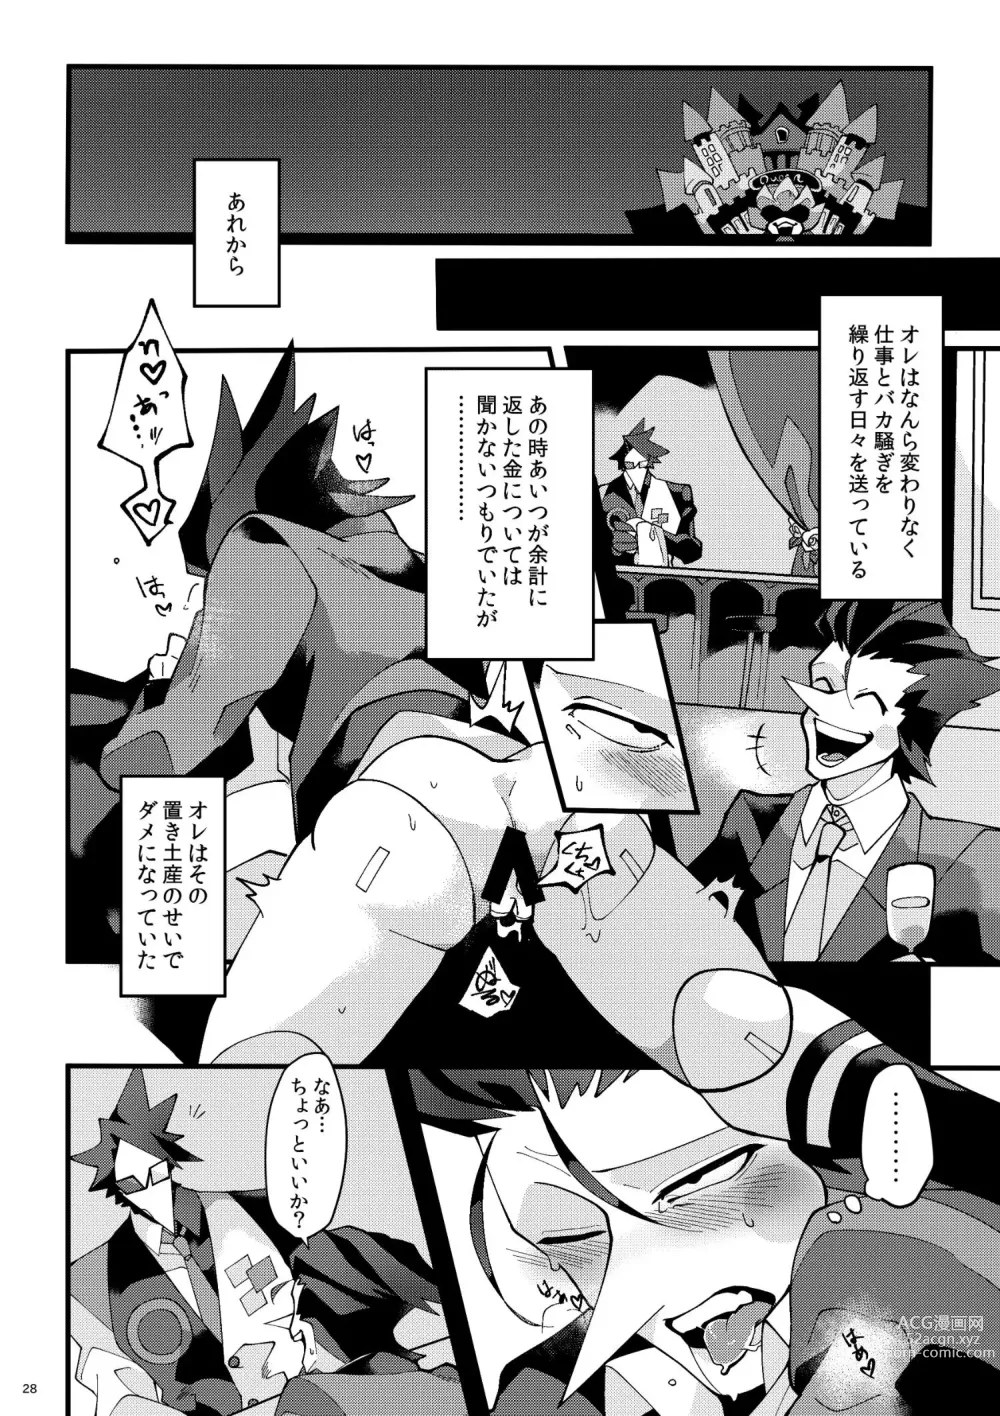 Page 29 of doujinshi Uchoutengai